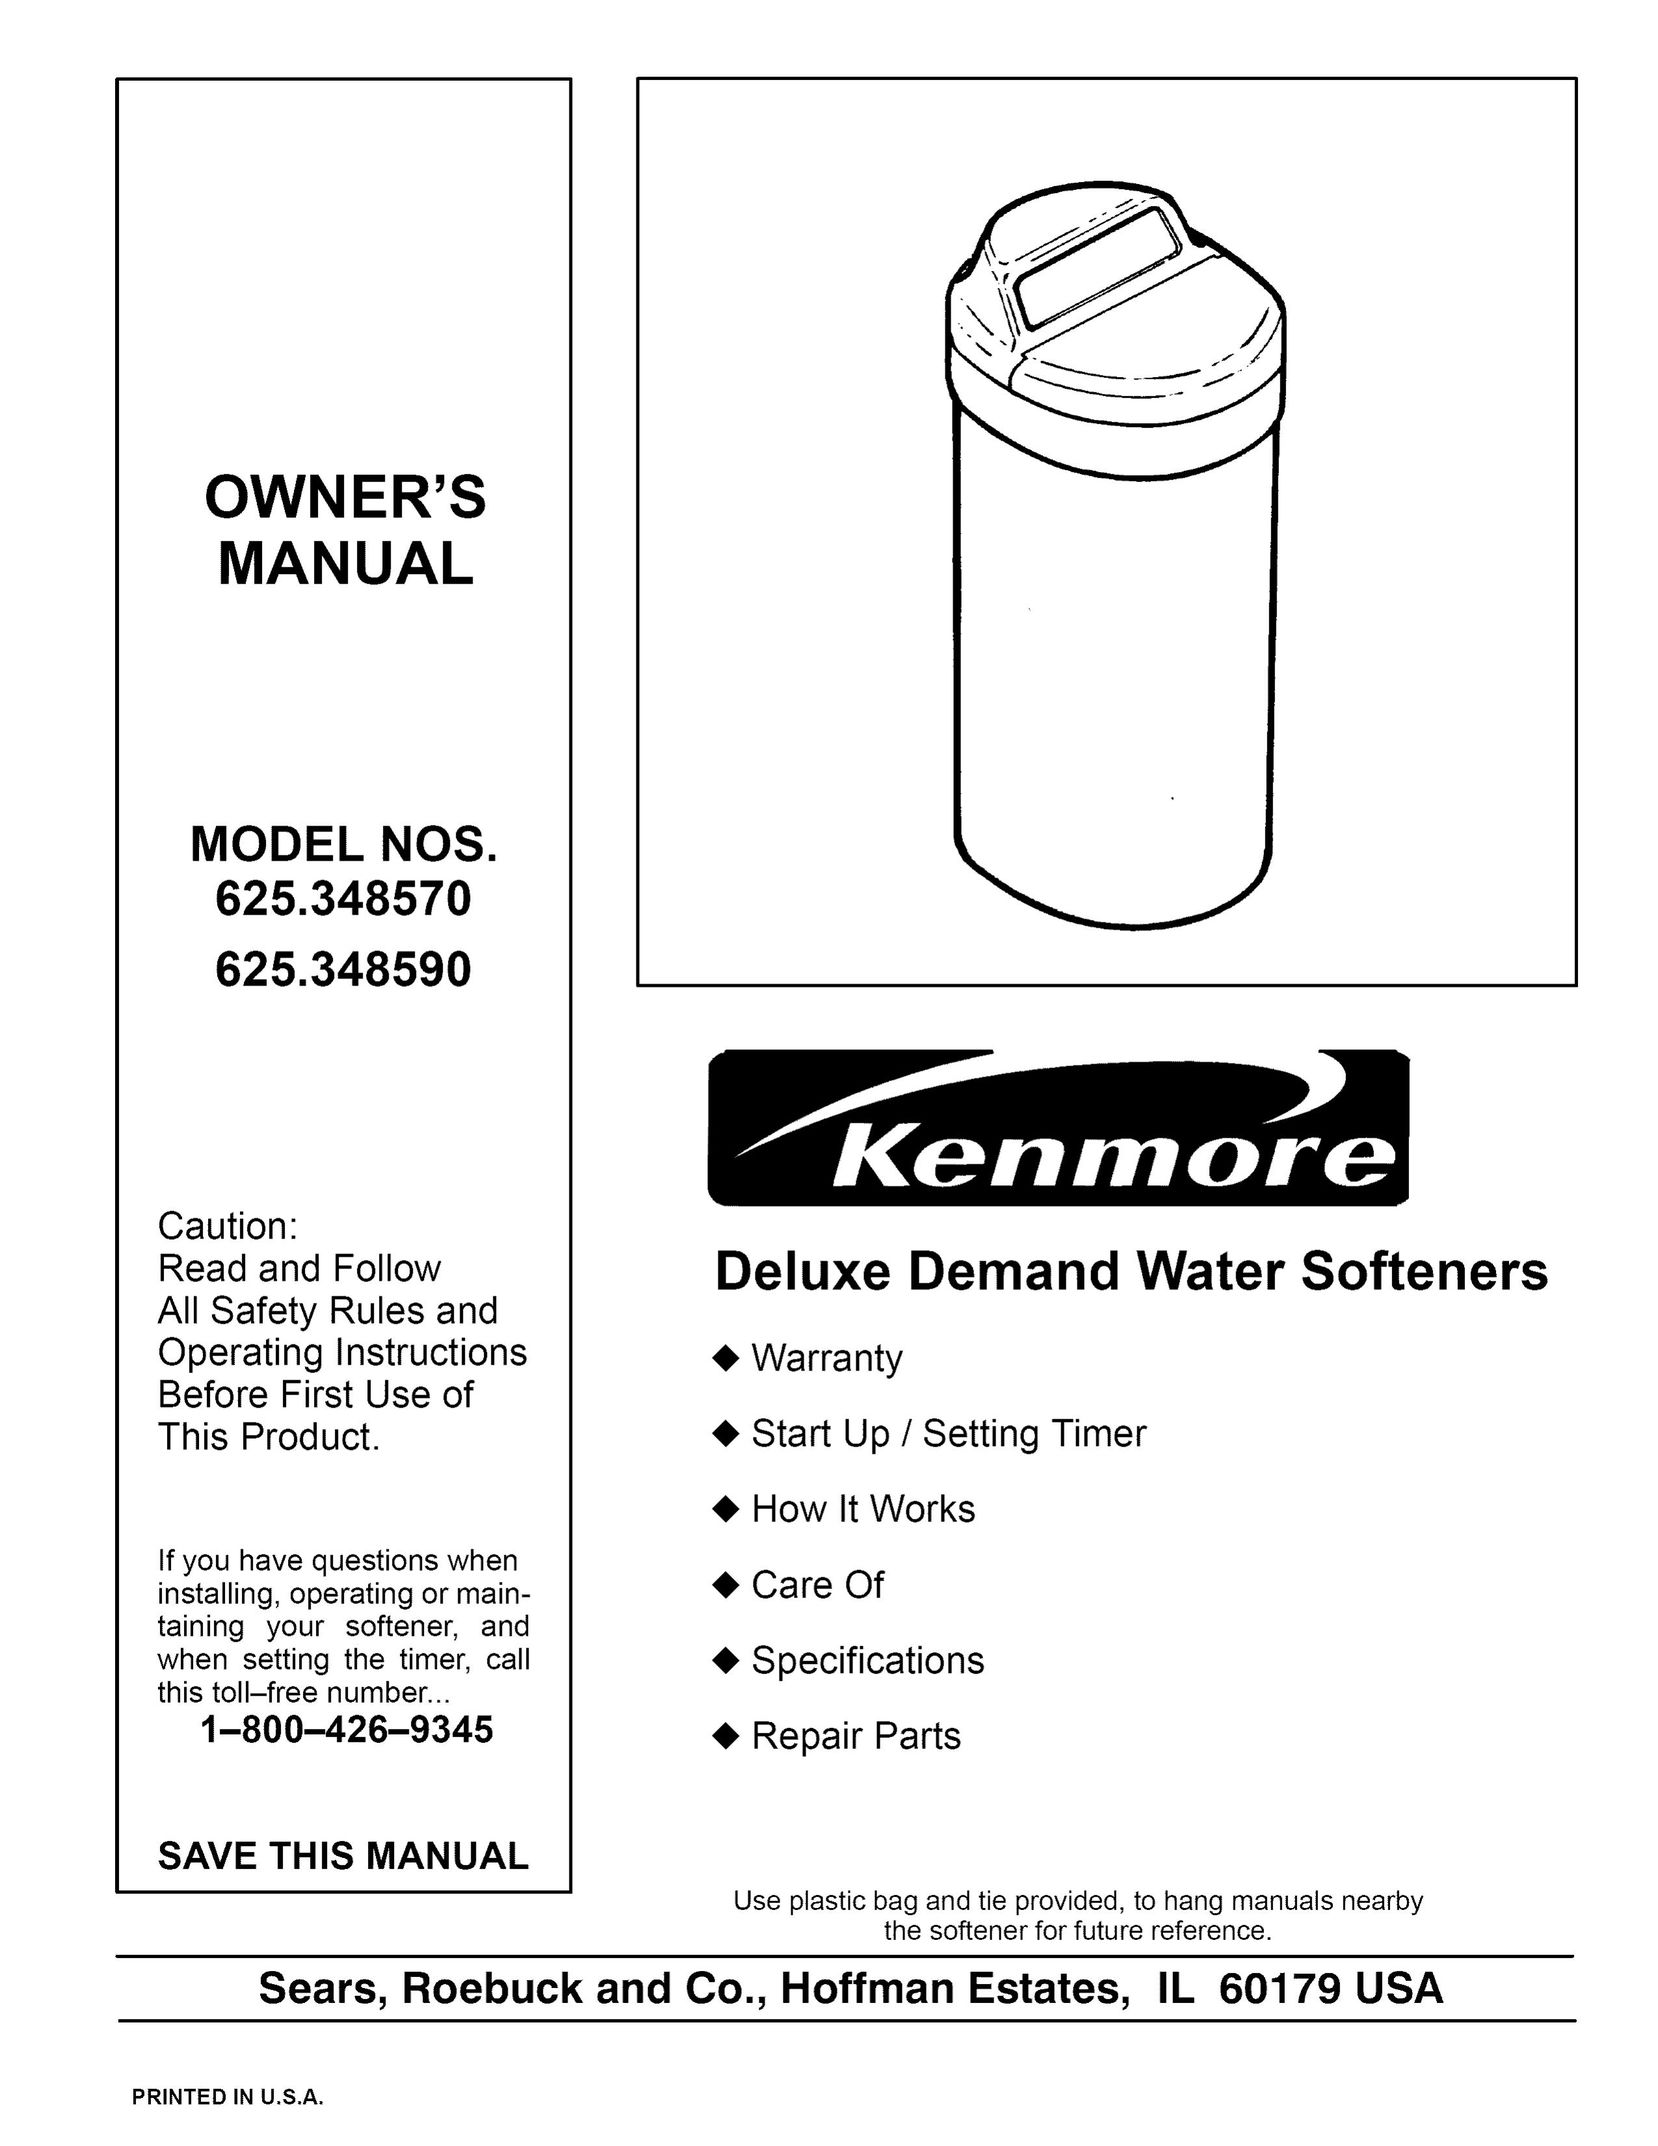 Kenmore 625.34859 Water System User Manual